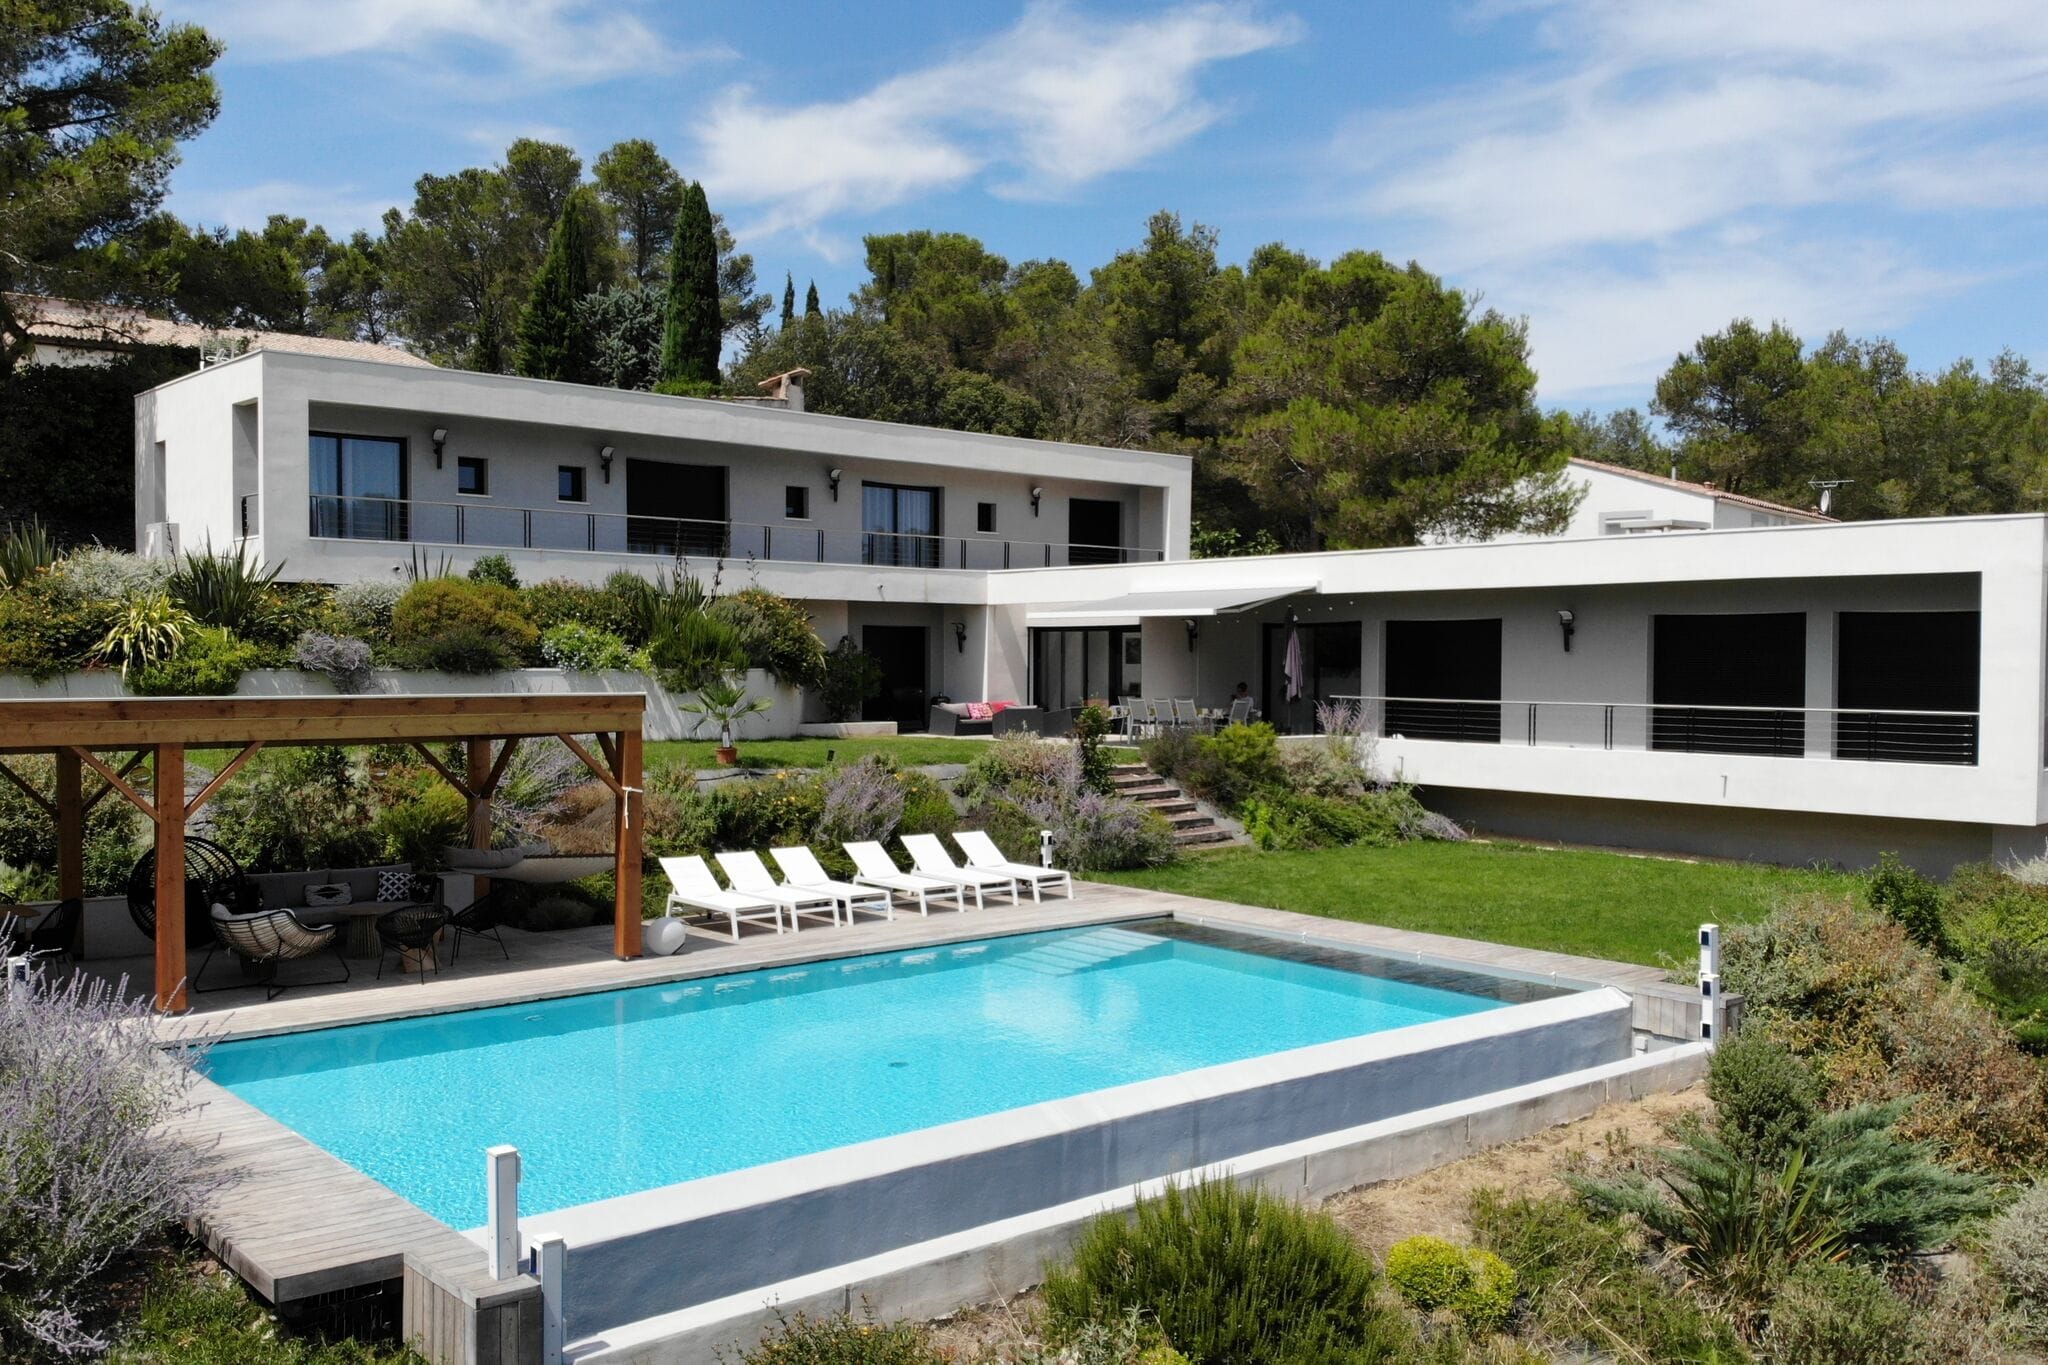 Moderne und besonders luxuriöse Villa mit 4 Suiten und großem, beheizbarem Pool